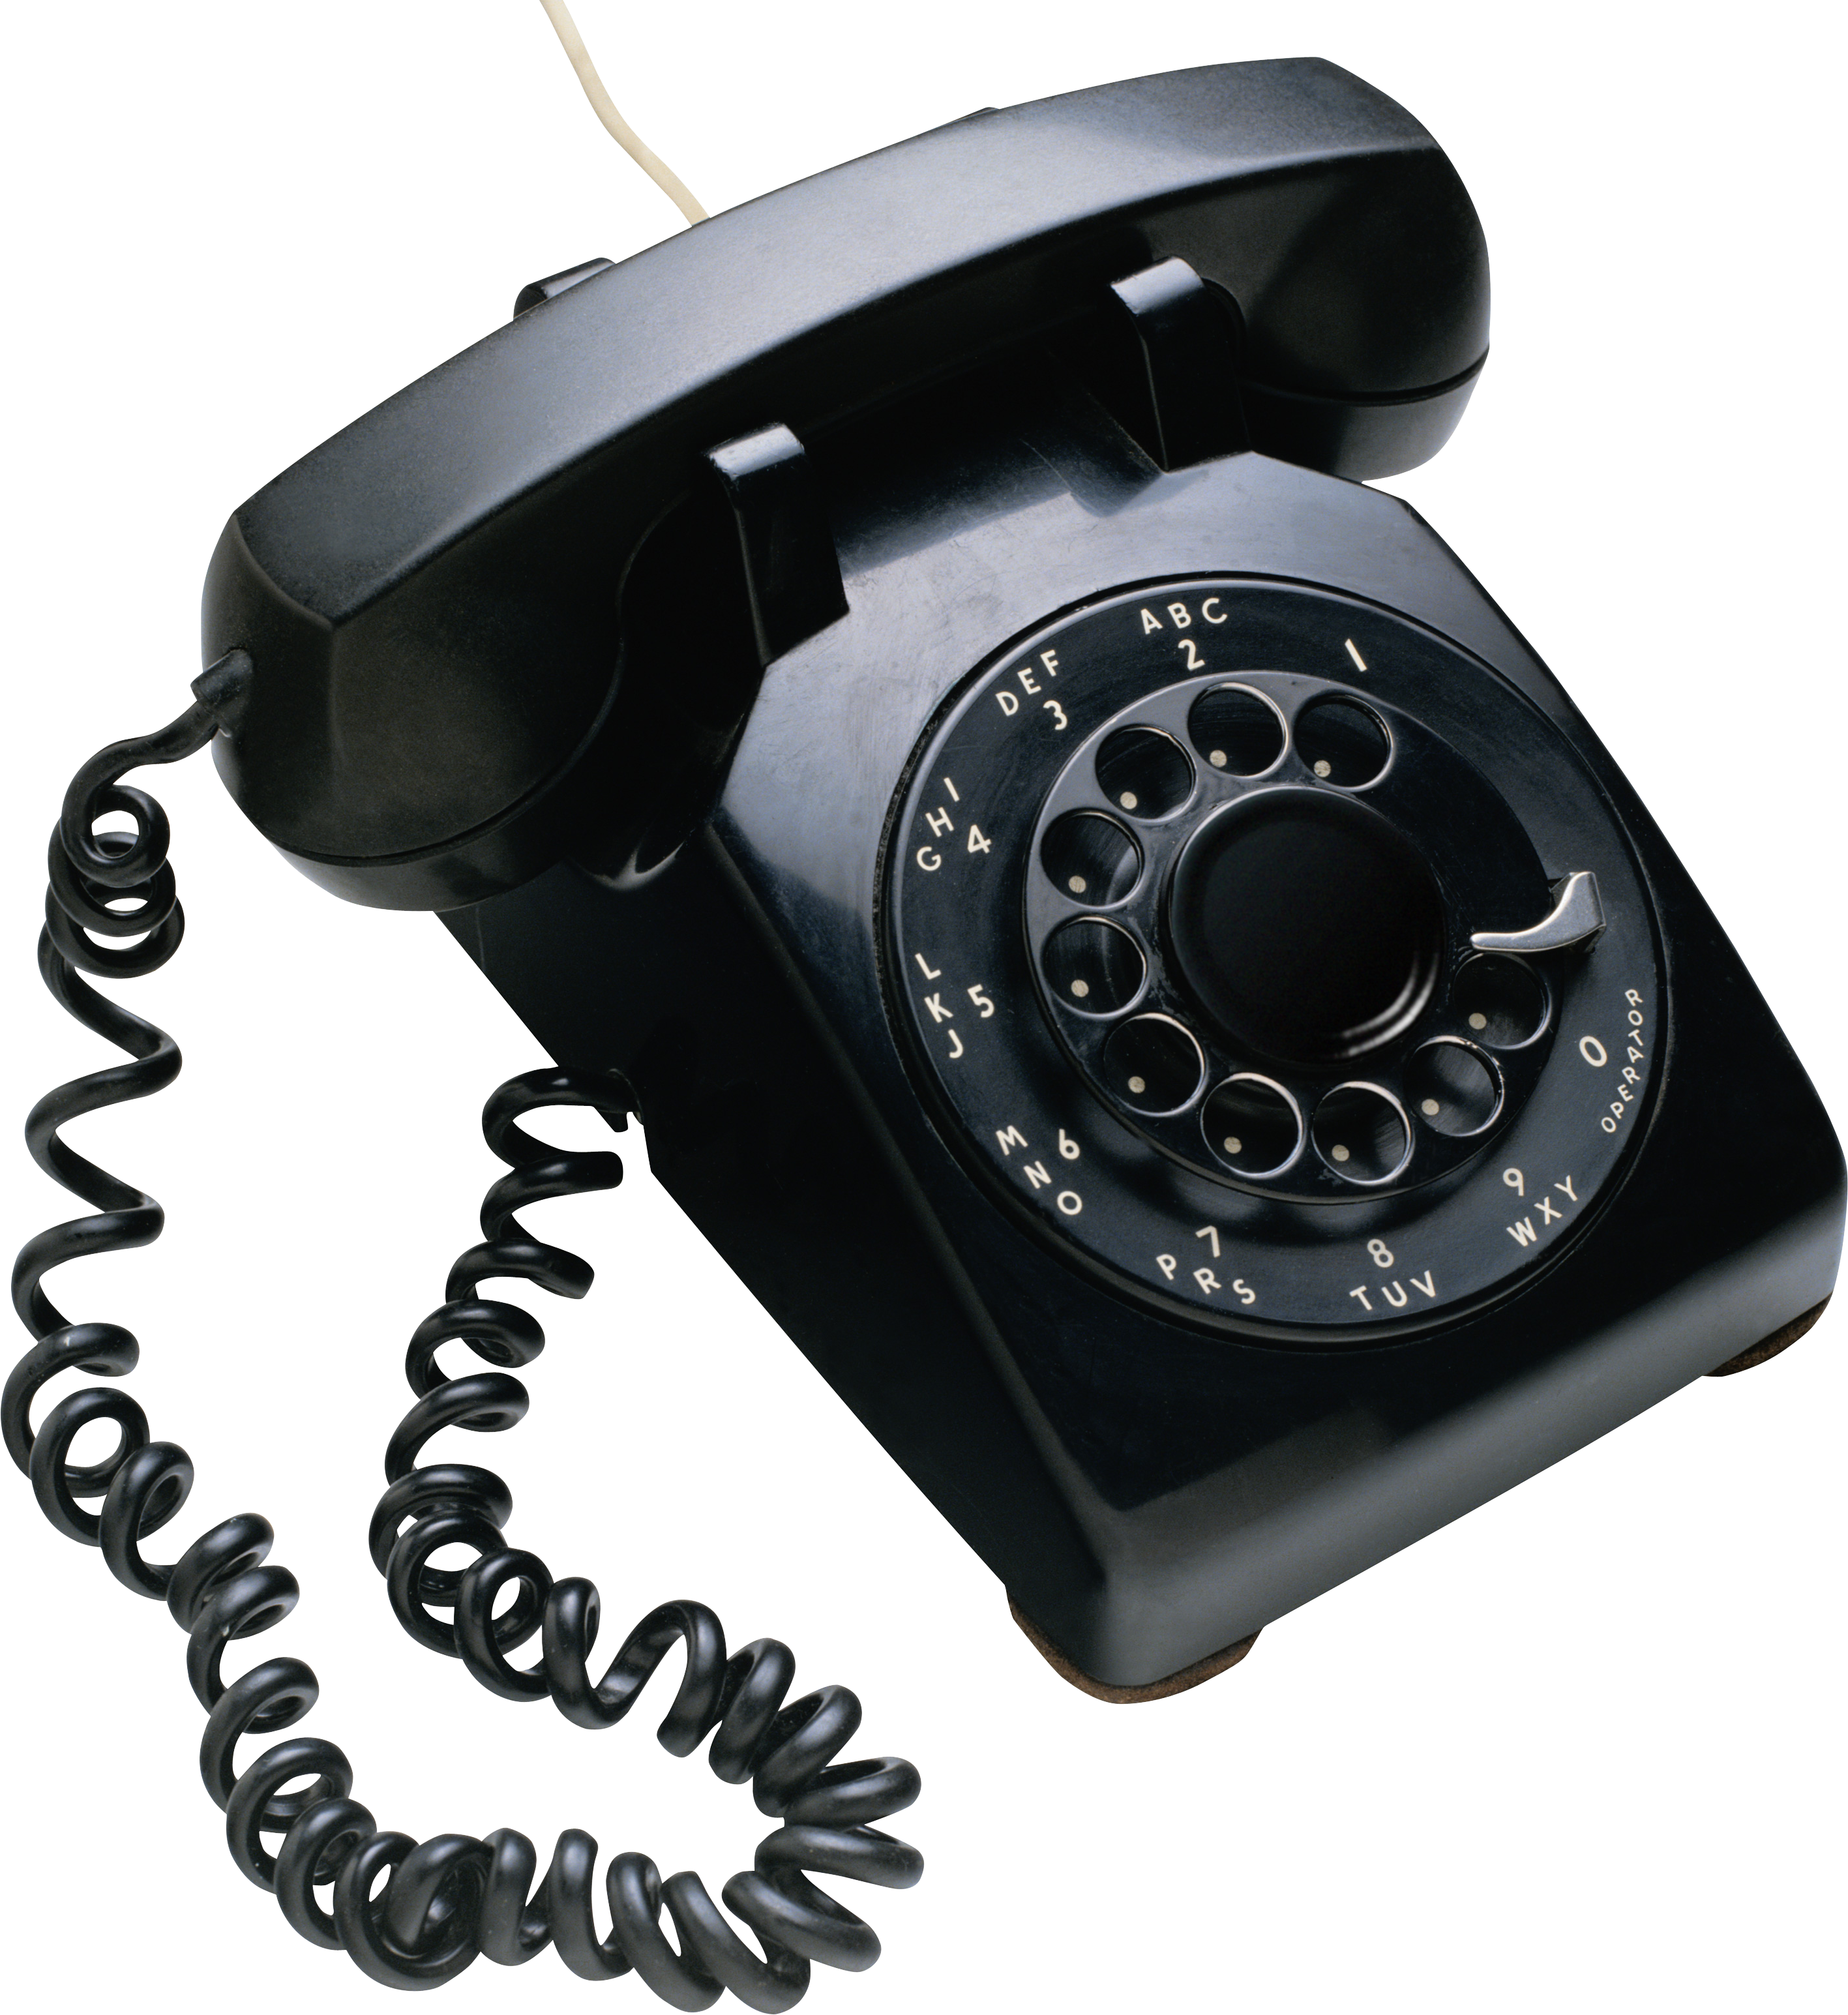 Vieux téléphone